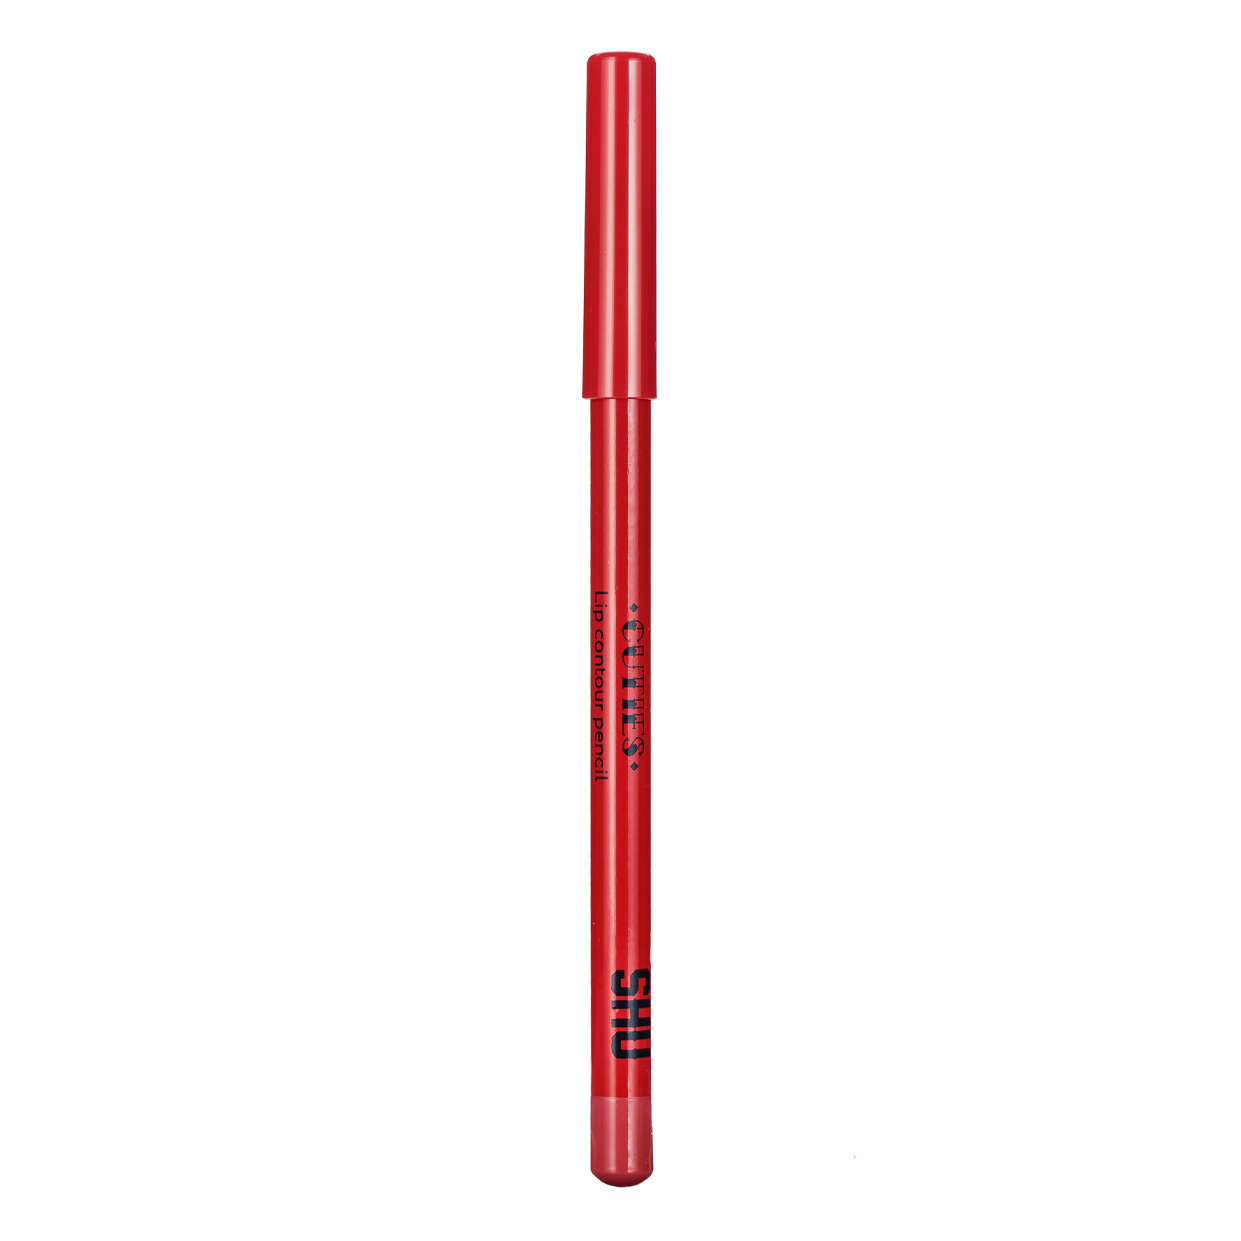 Карандаш для губ SHU Cuties контурный, сатиновый, тон 42 Вишневый, 0,78 г shu карандаш контур для губ 44 пепельный розовый cuties 0 78 гр